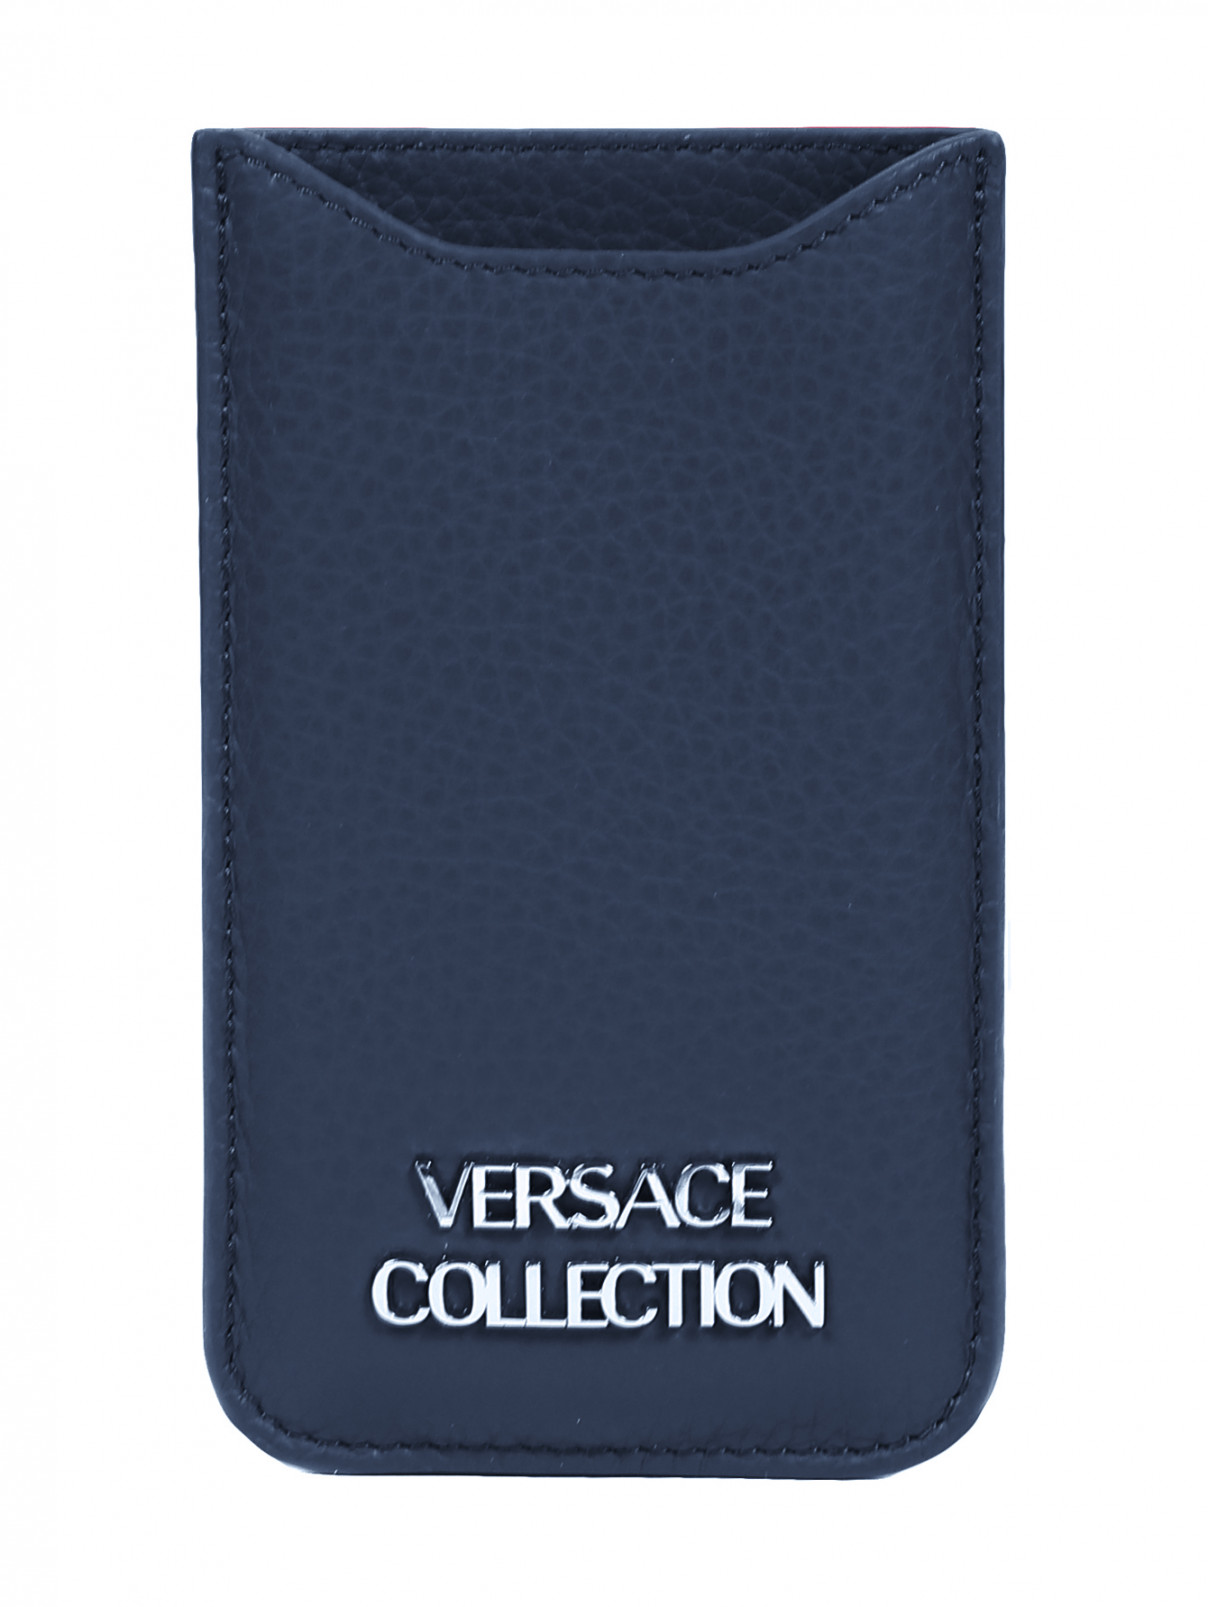 Чехол из кожи для IPhone 4 Versace Collection  –  Общий вид  – Цвет:  Синий